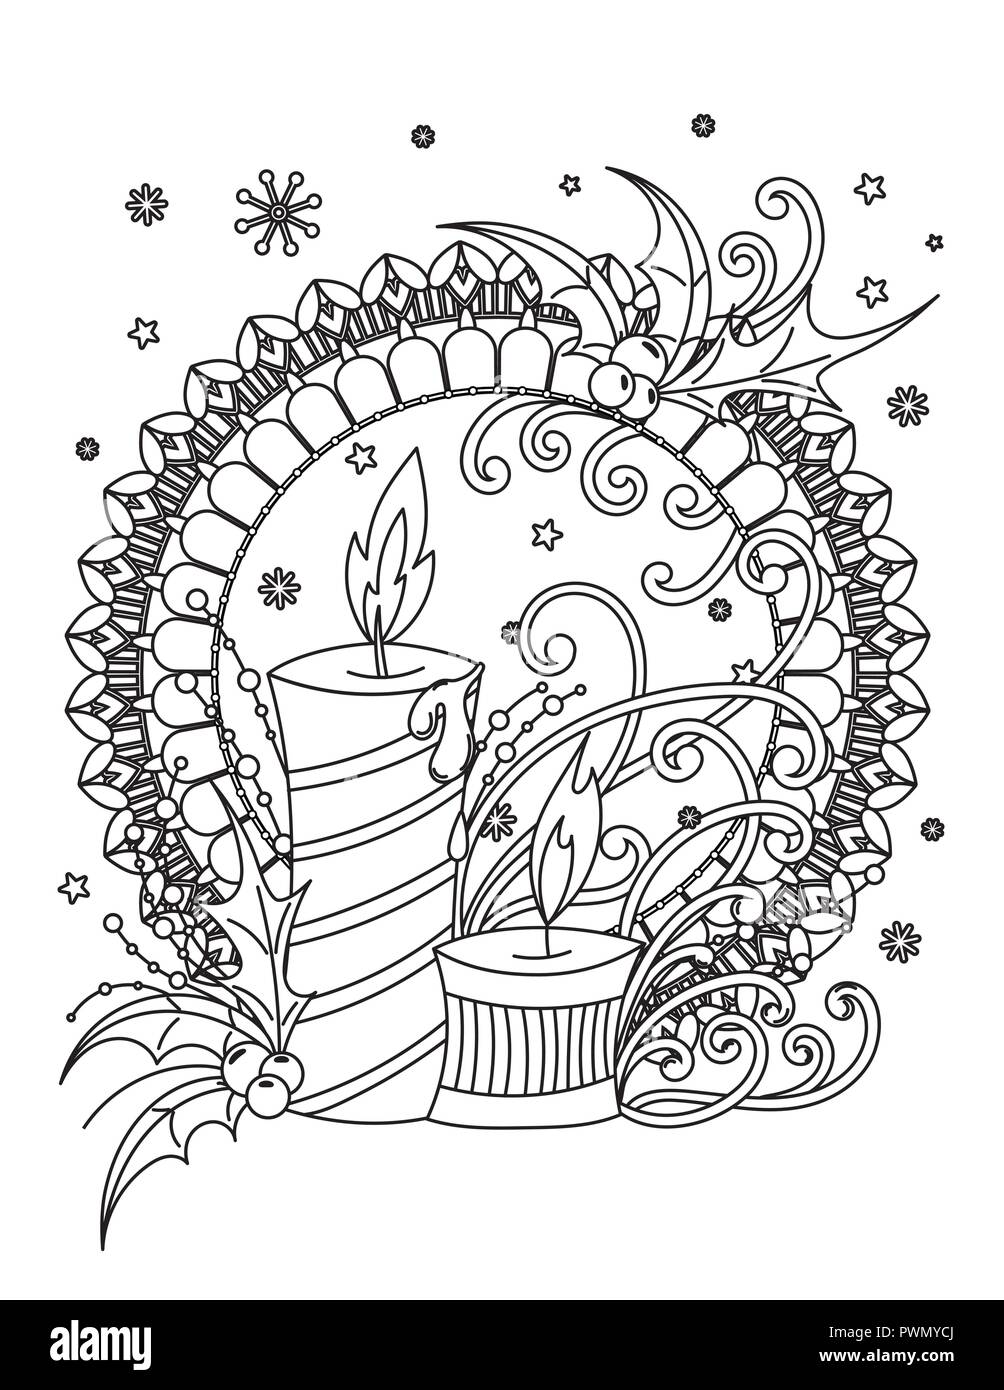 Mandalas colorear adultos y rotuladores fondo negro : 50 mandalas  rotuladores para meditar libro de colorear para adultos y personas mayores-  blanco y negro - regalo perfecto para cumpleaños, Navidad, acción de